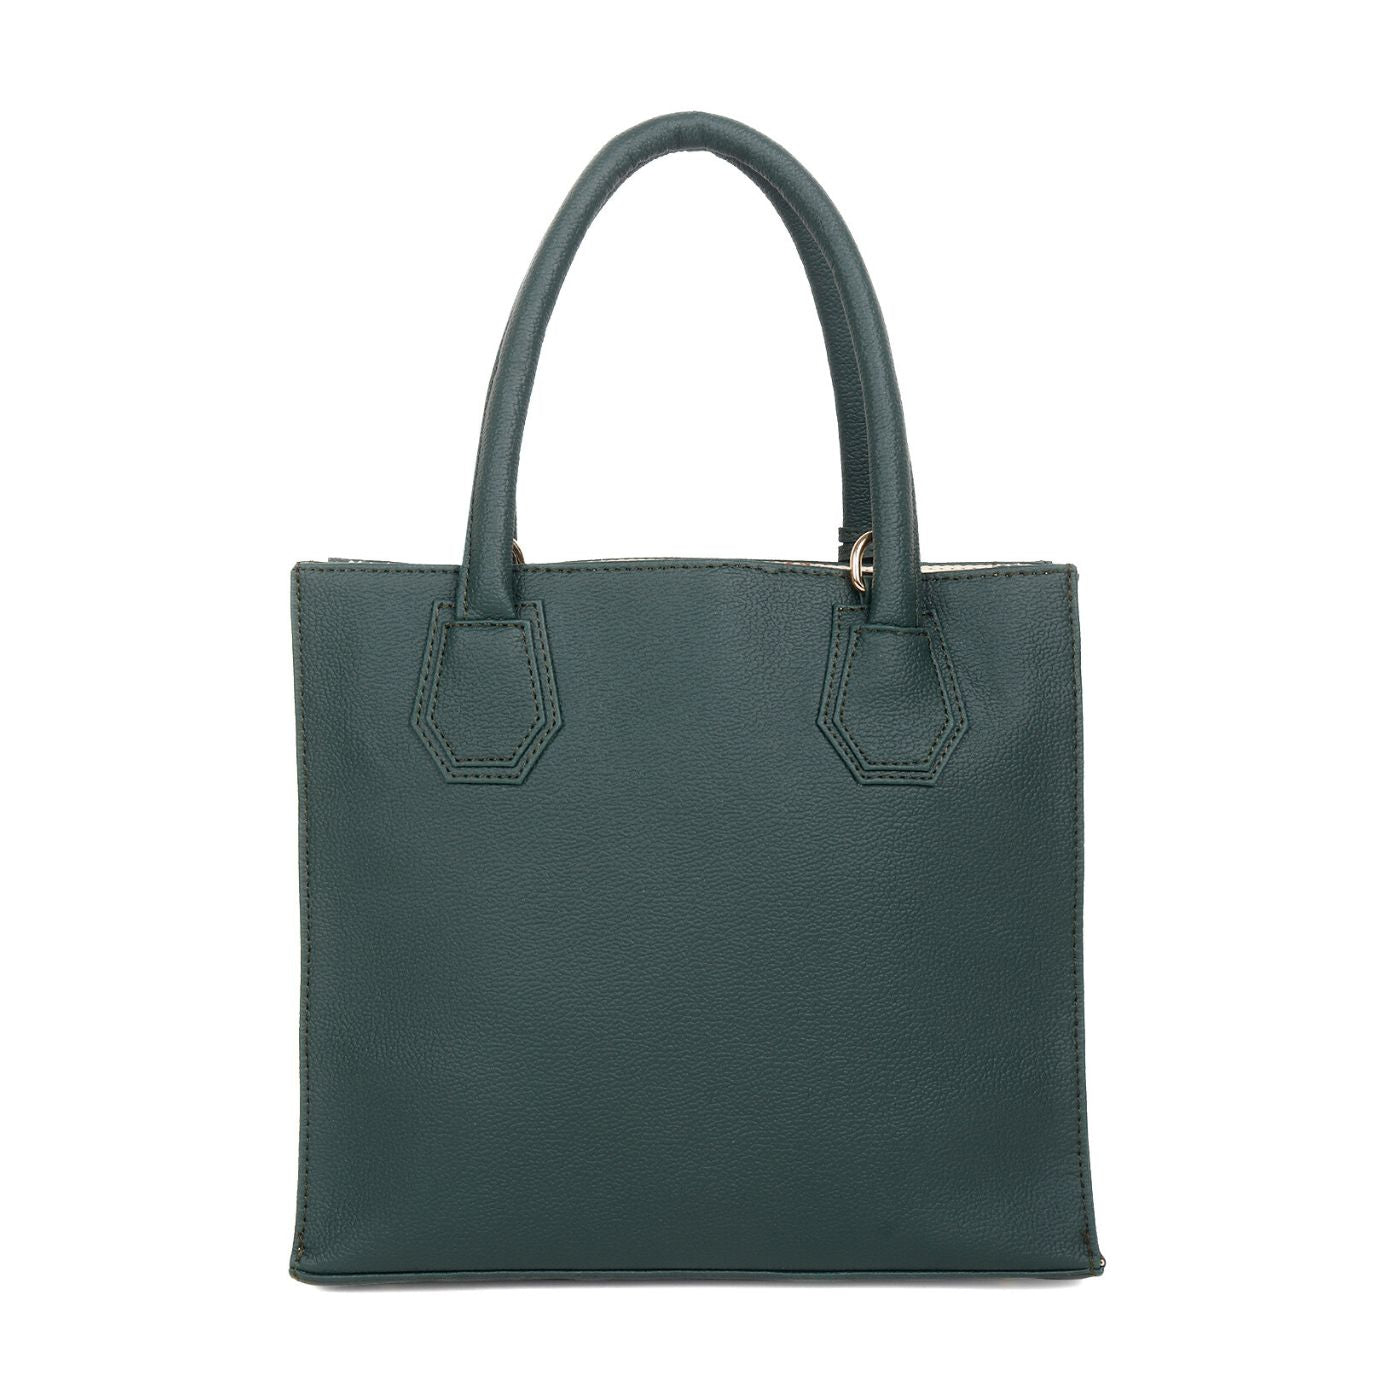 Satchel Handbag multi compartment Green